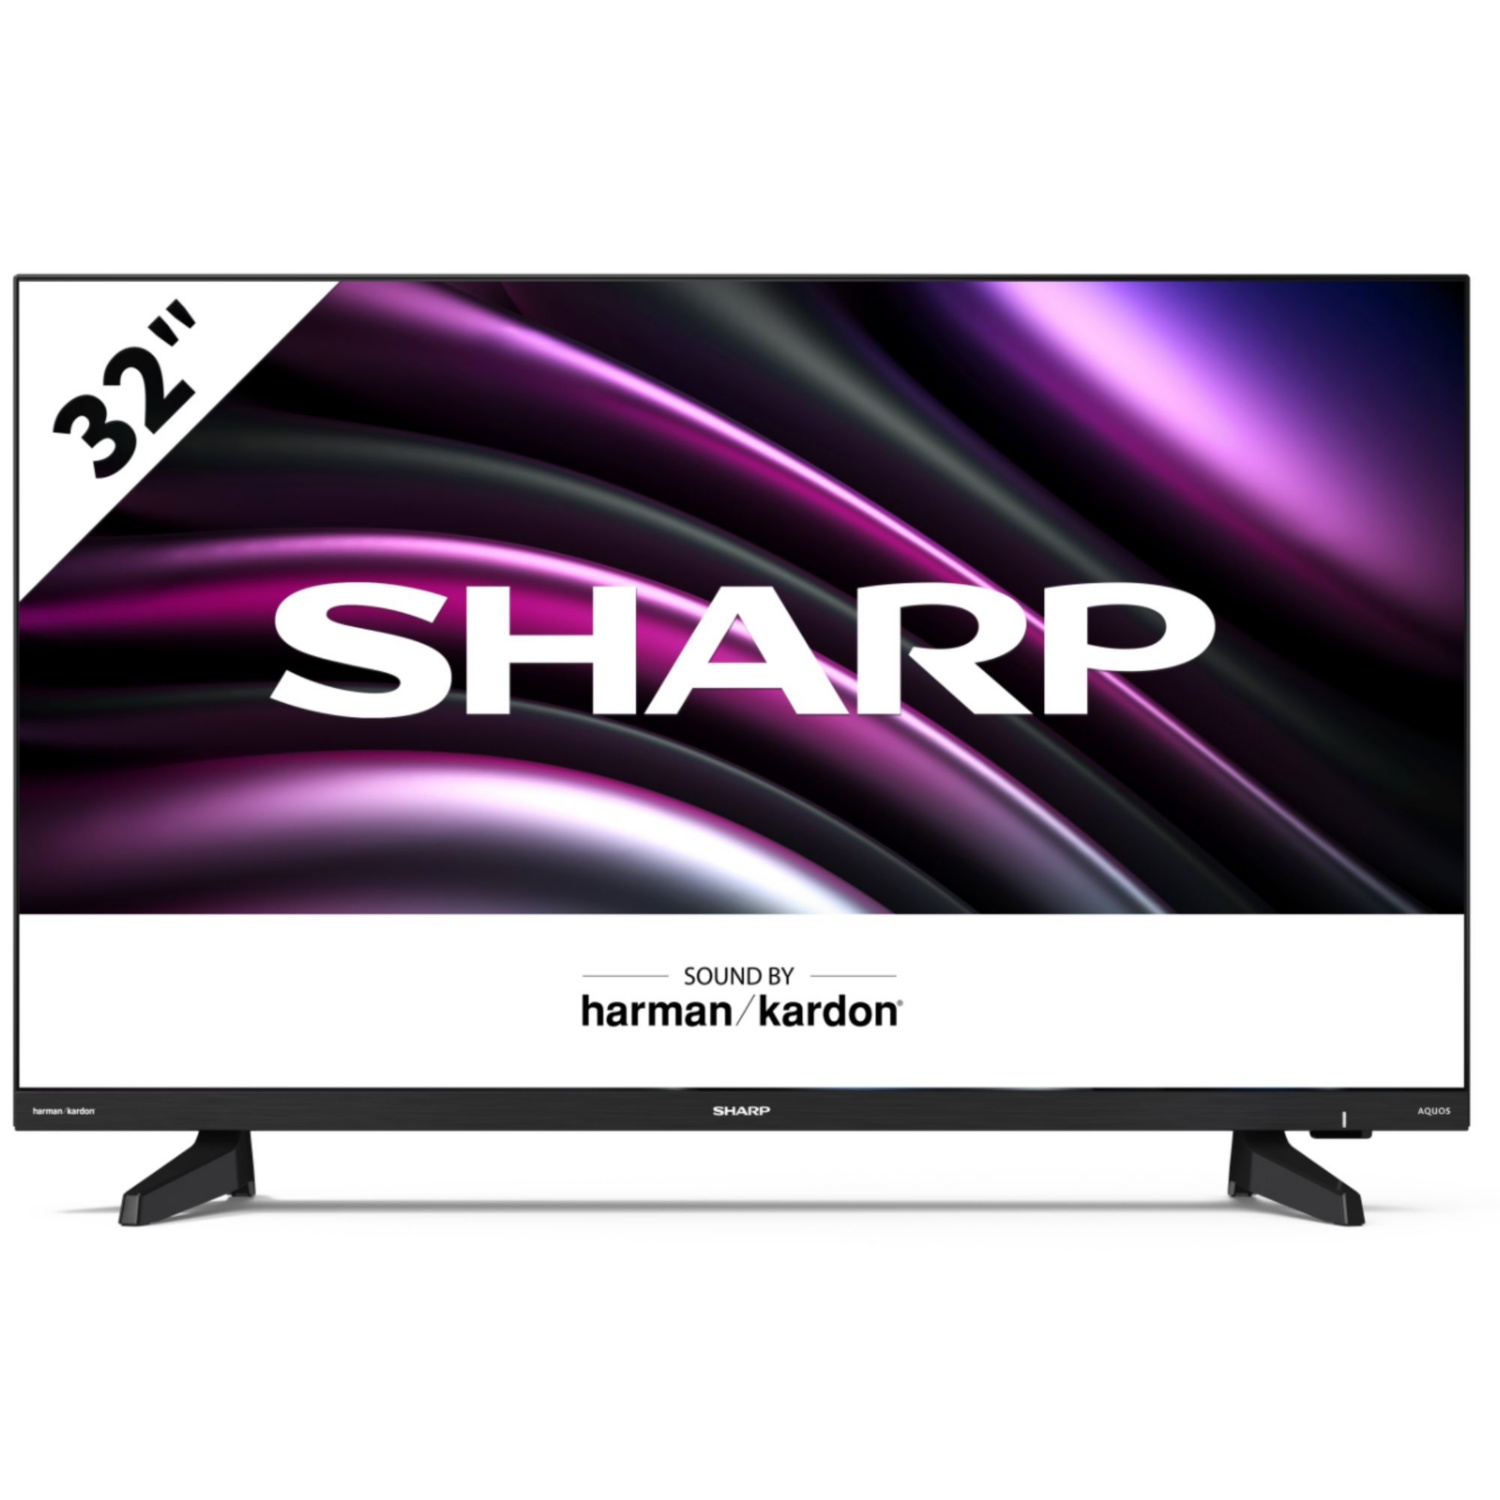 SHARP LED-televizor DB2E z visoko ločljivostjo, 81-cm (32")